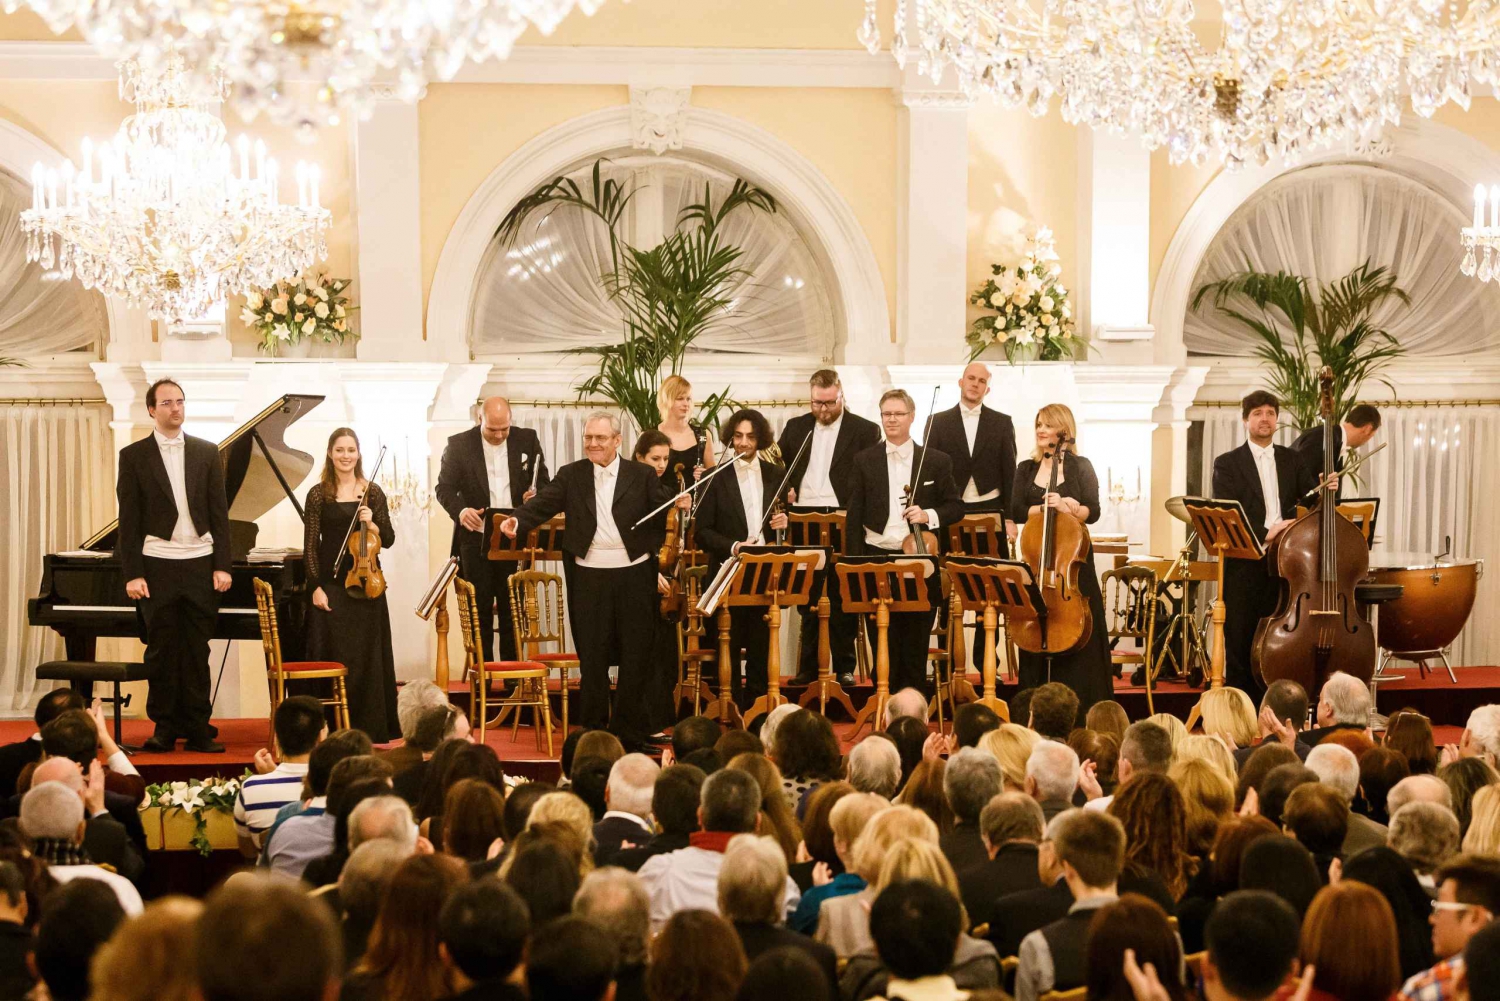 Vienna: Strauss & Mozart New Year's Eve Concert at Kursalon